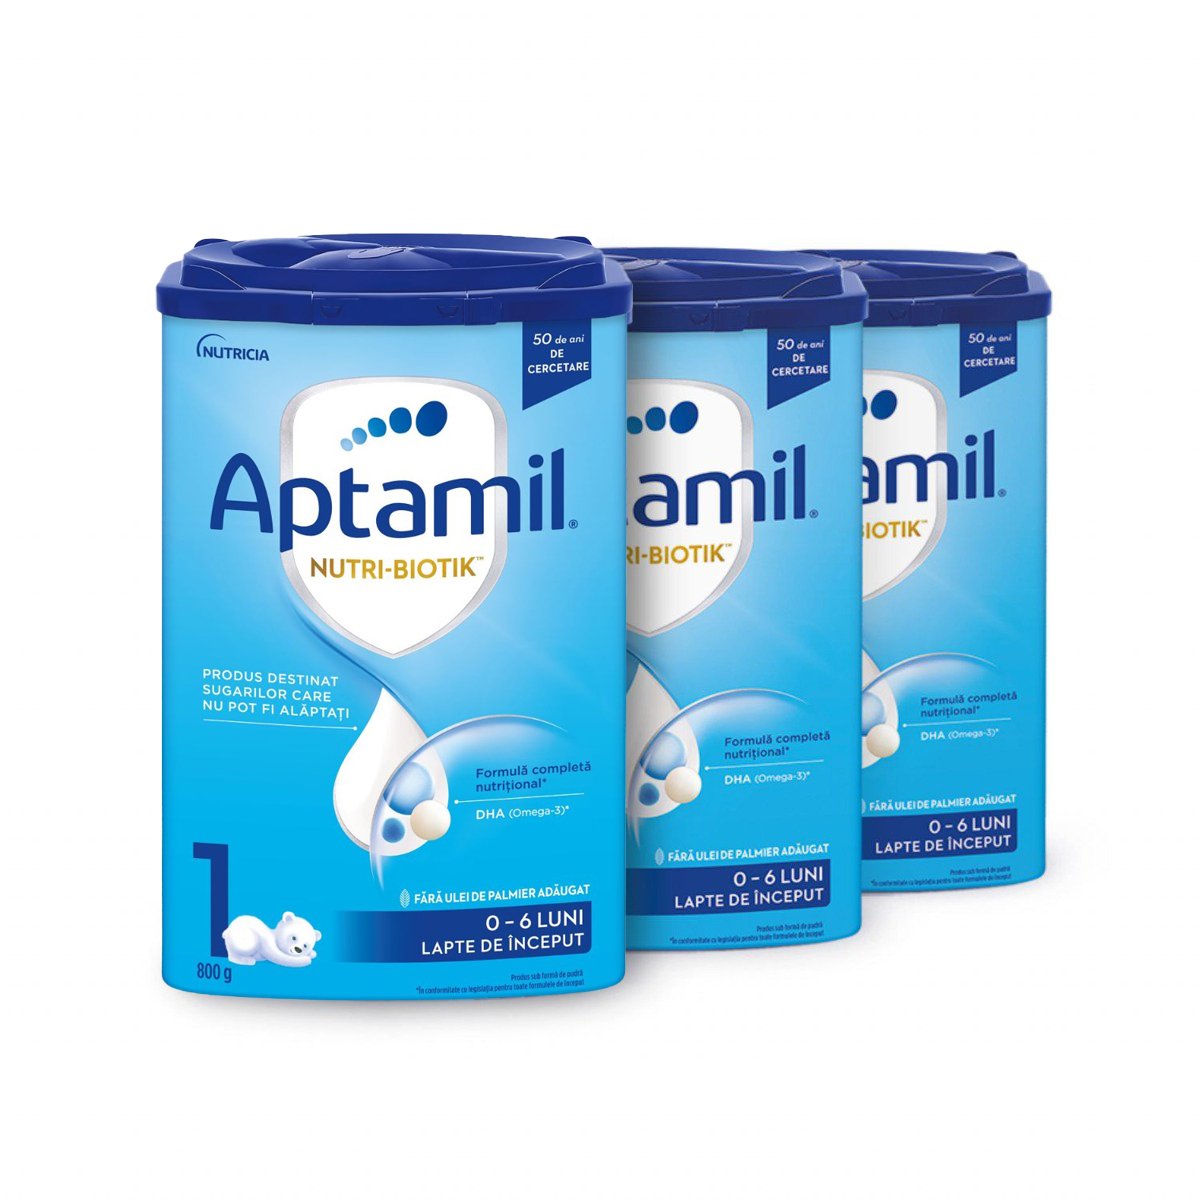 Lapte praf Aptamil Nutri-Biotik 1, Trio-Pack, 800 g, 0-6 luni Aptamil